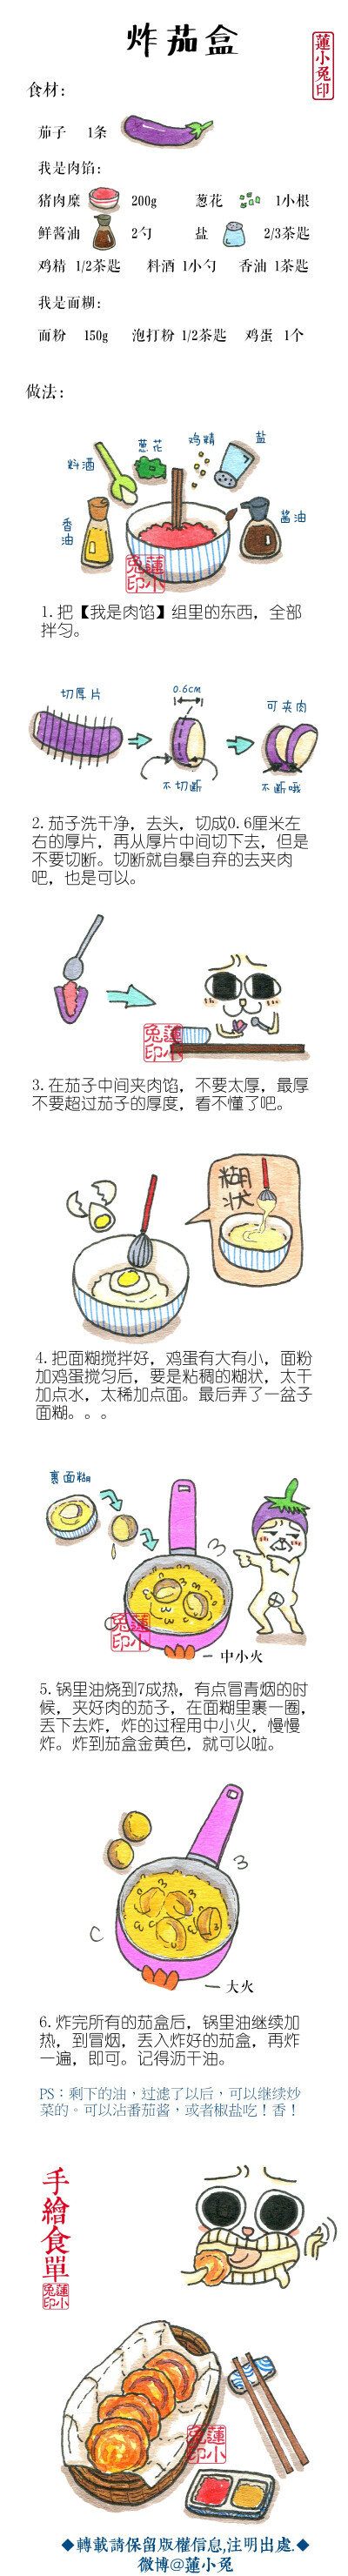 【炸茄盒】#蓮小兔的手绘菜谱#